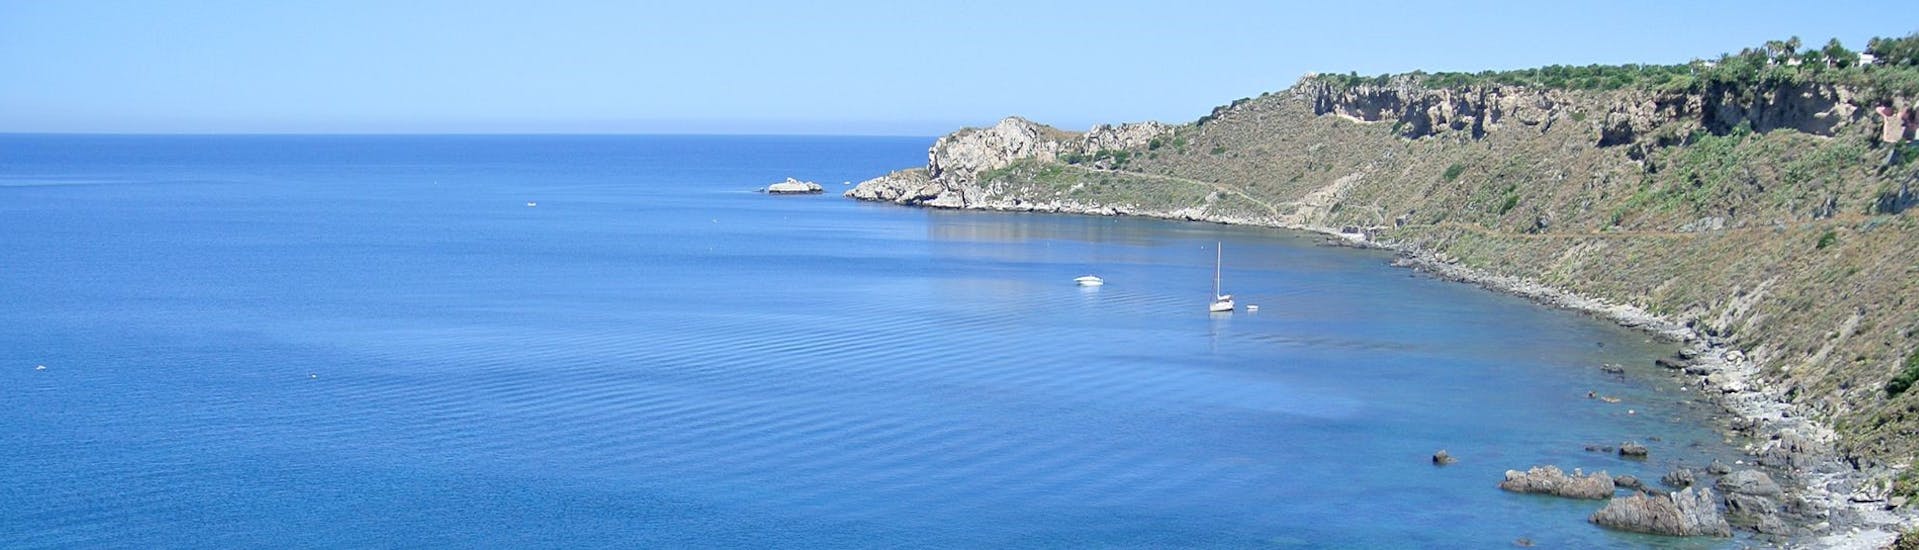 Blick vom Boot von Sky Sea Charter während der privaten Bootstour von Milazzo nach Vulcano und Lipari.